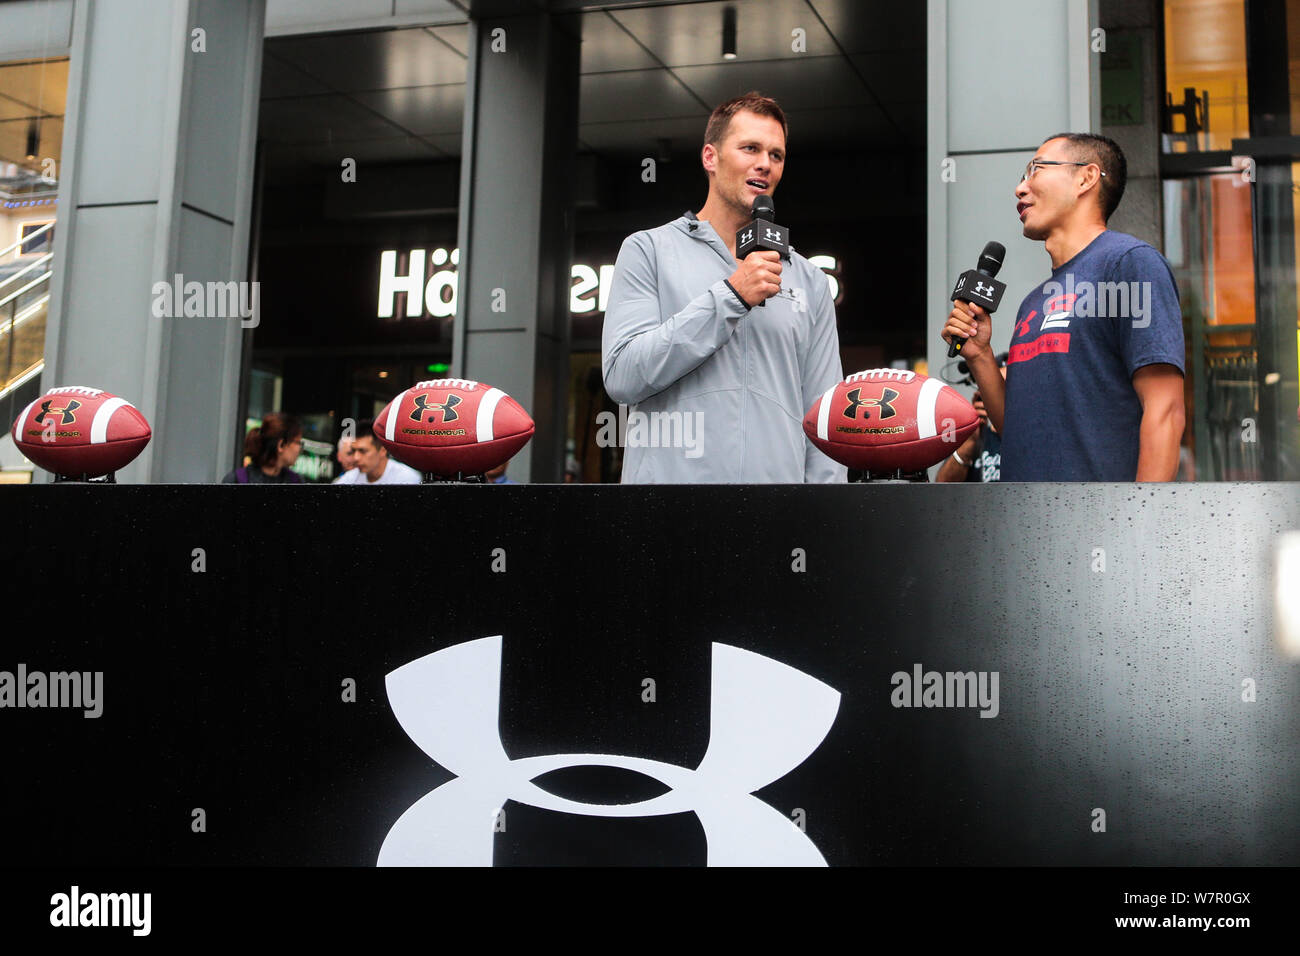 American Football spieler Tom Brady für die New England Patriots der National Football League (NFL), Links, nimmt an der Eröffnung einer neuen st Stockfoto